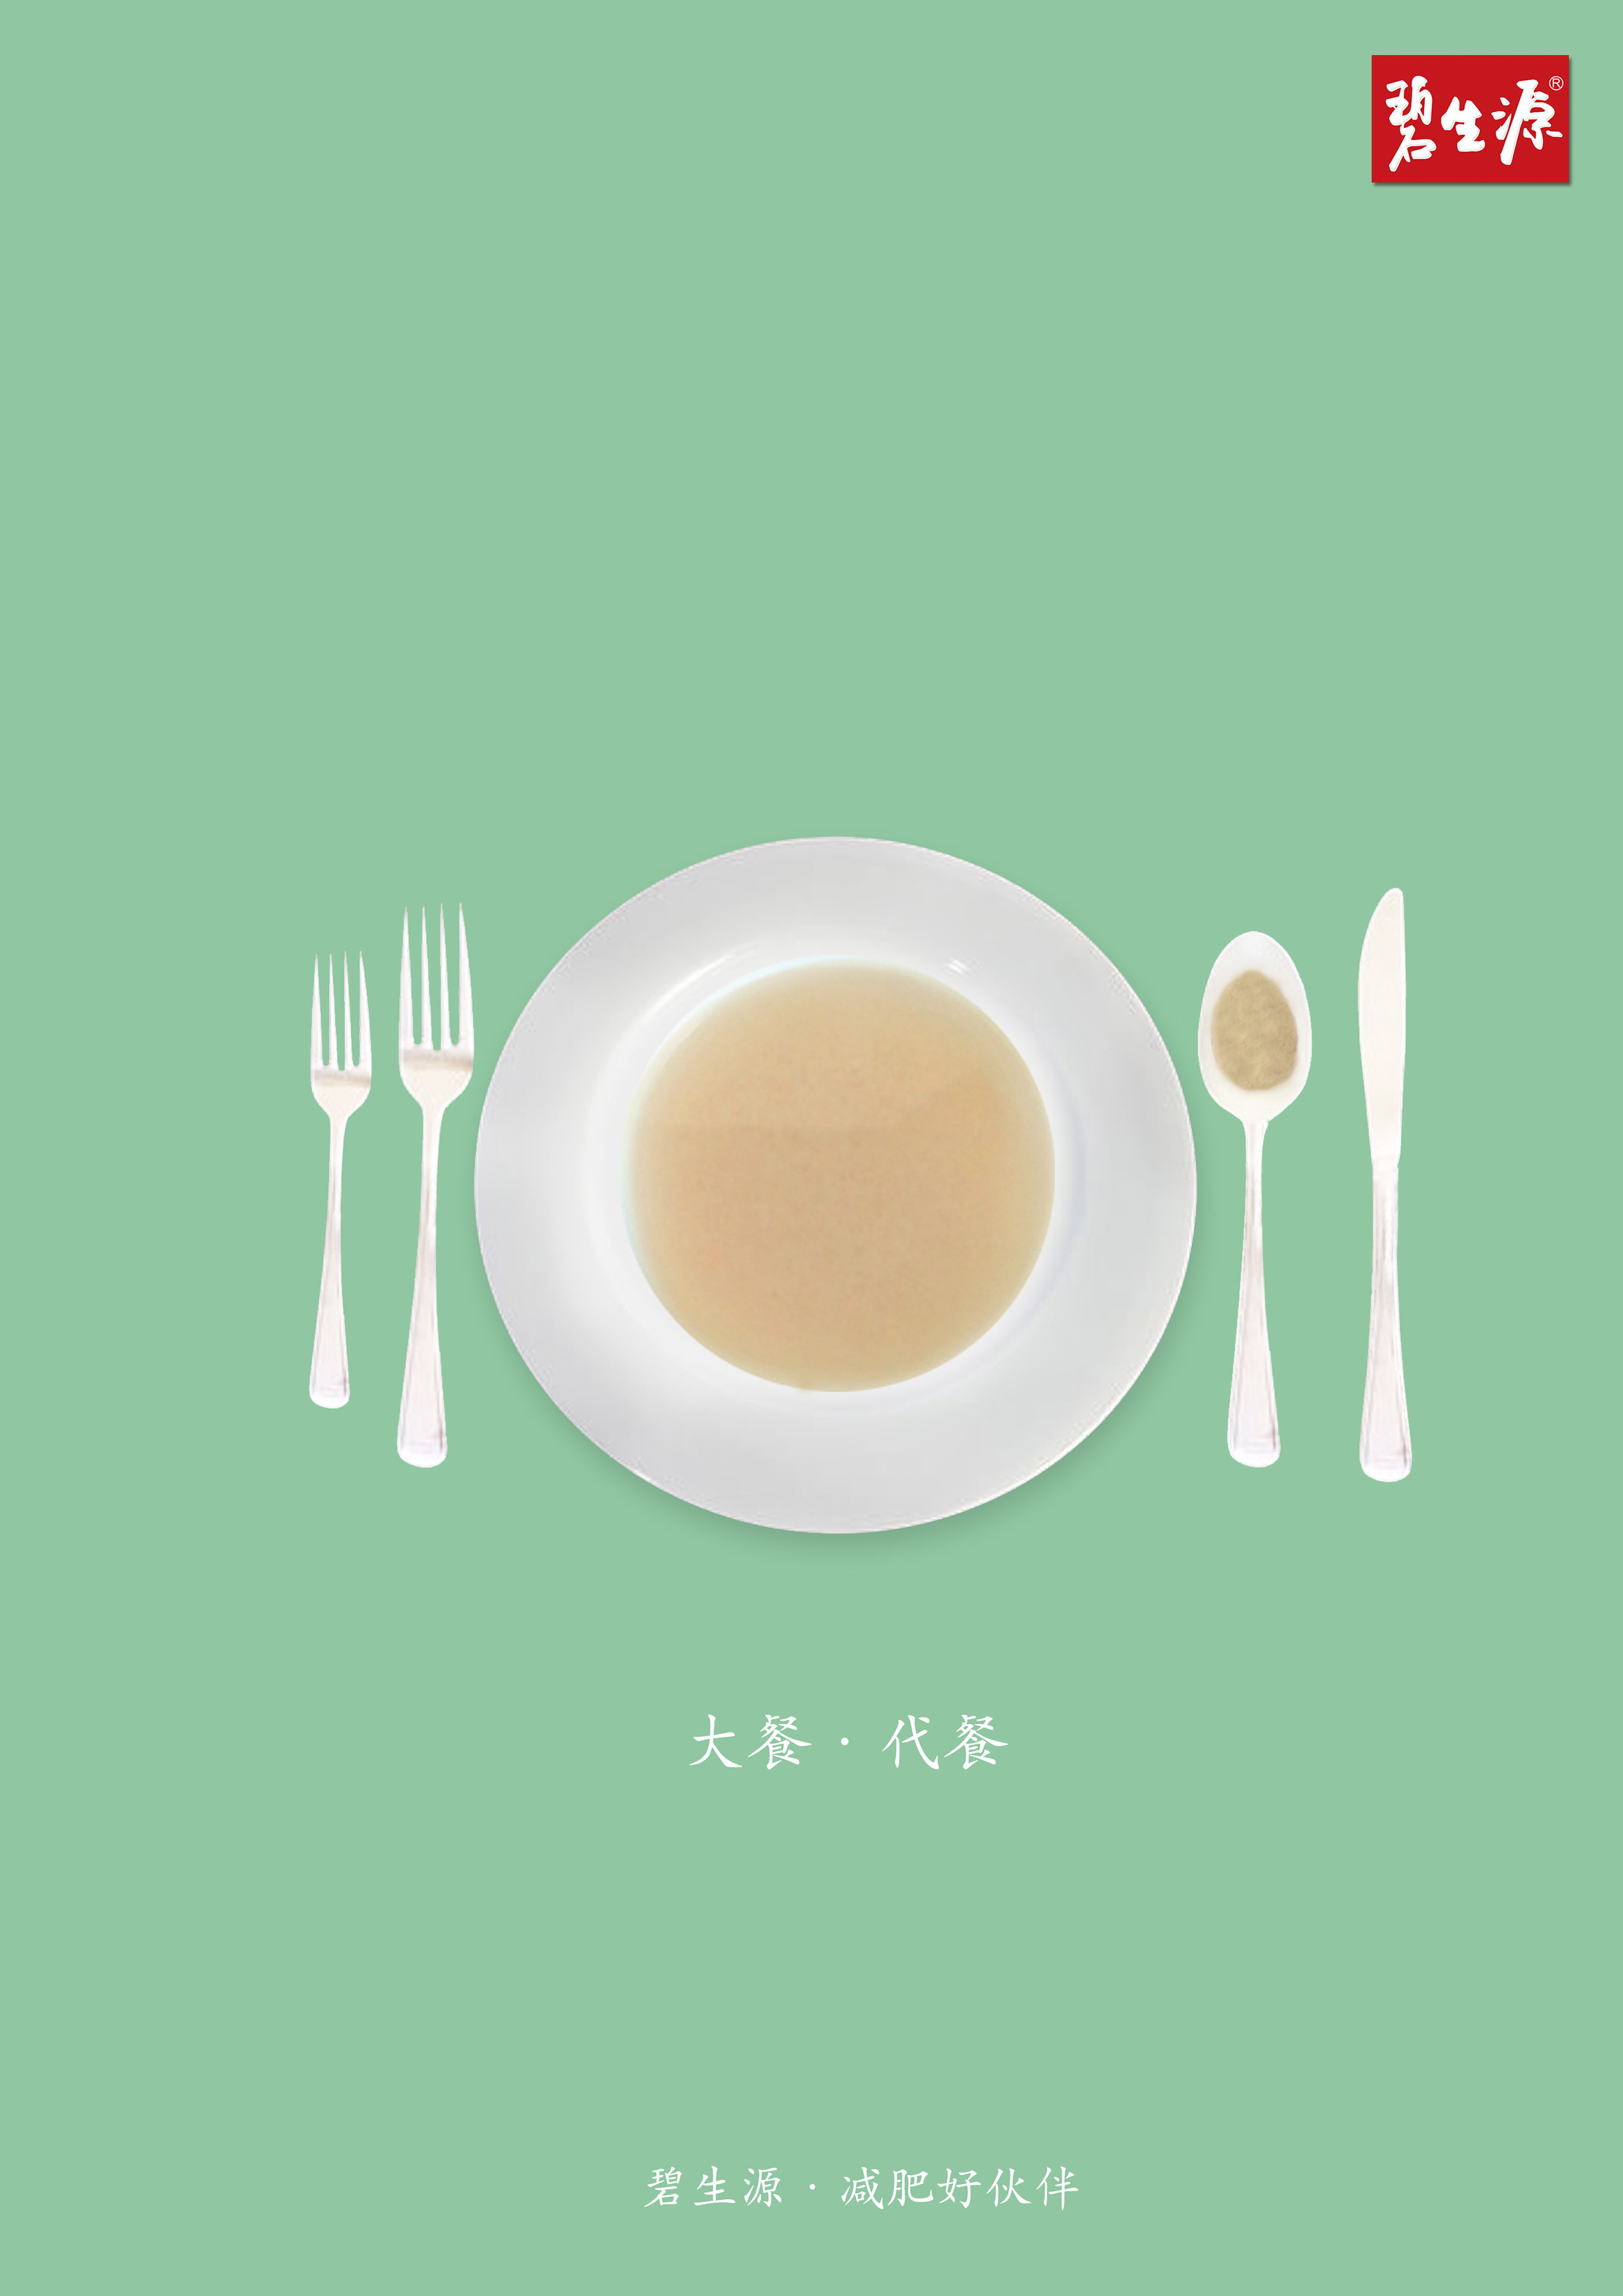 《碧生源减肥茶》创意海报设计